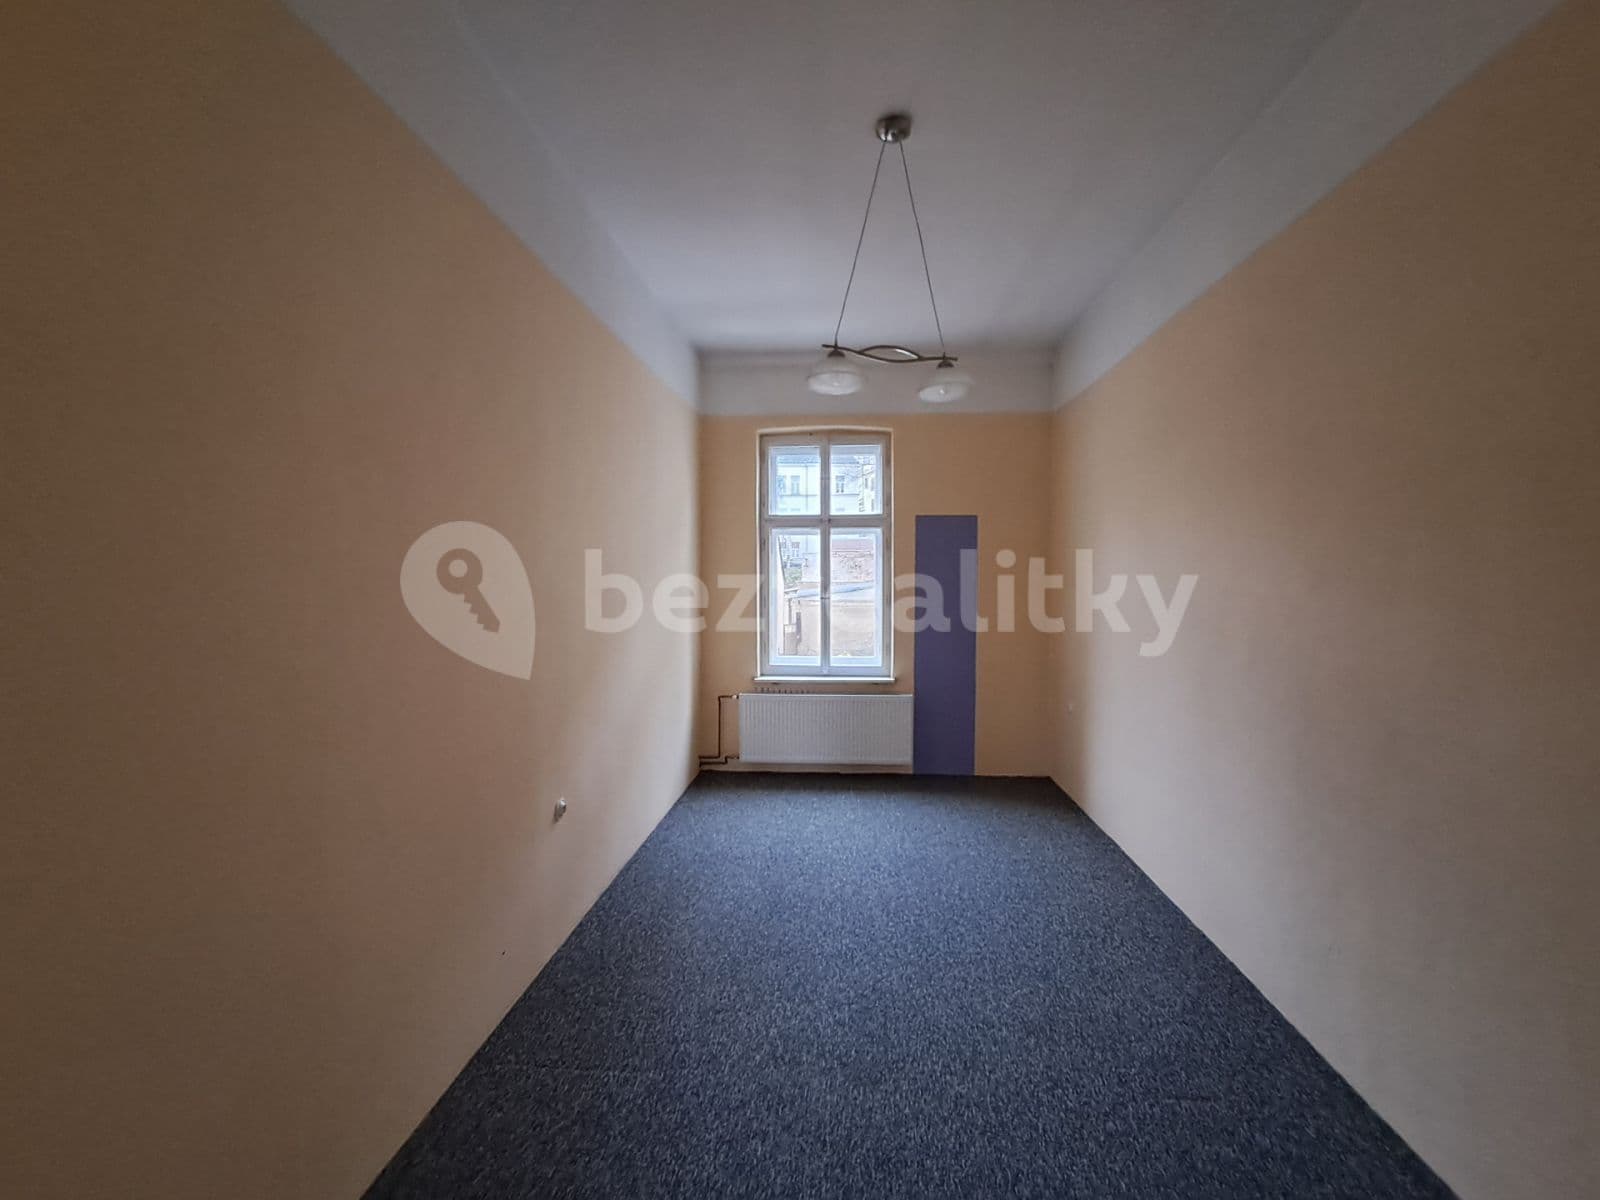 3 bedroom flat for sale, 91 m², Liberecká, Jablonec nad Nisou, Liberecký Region